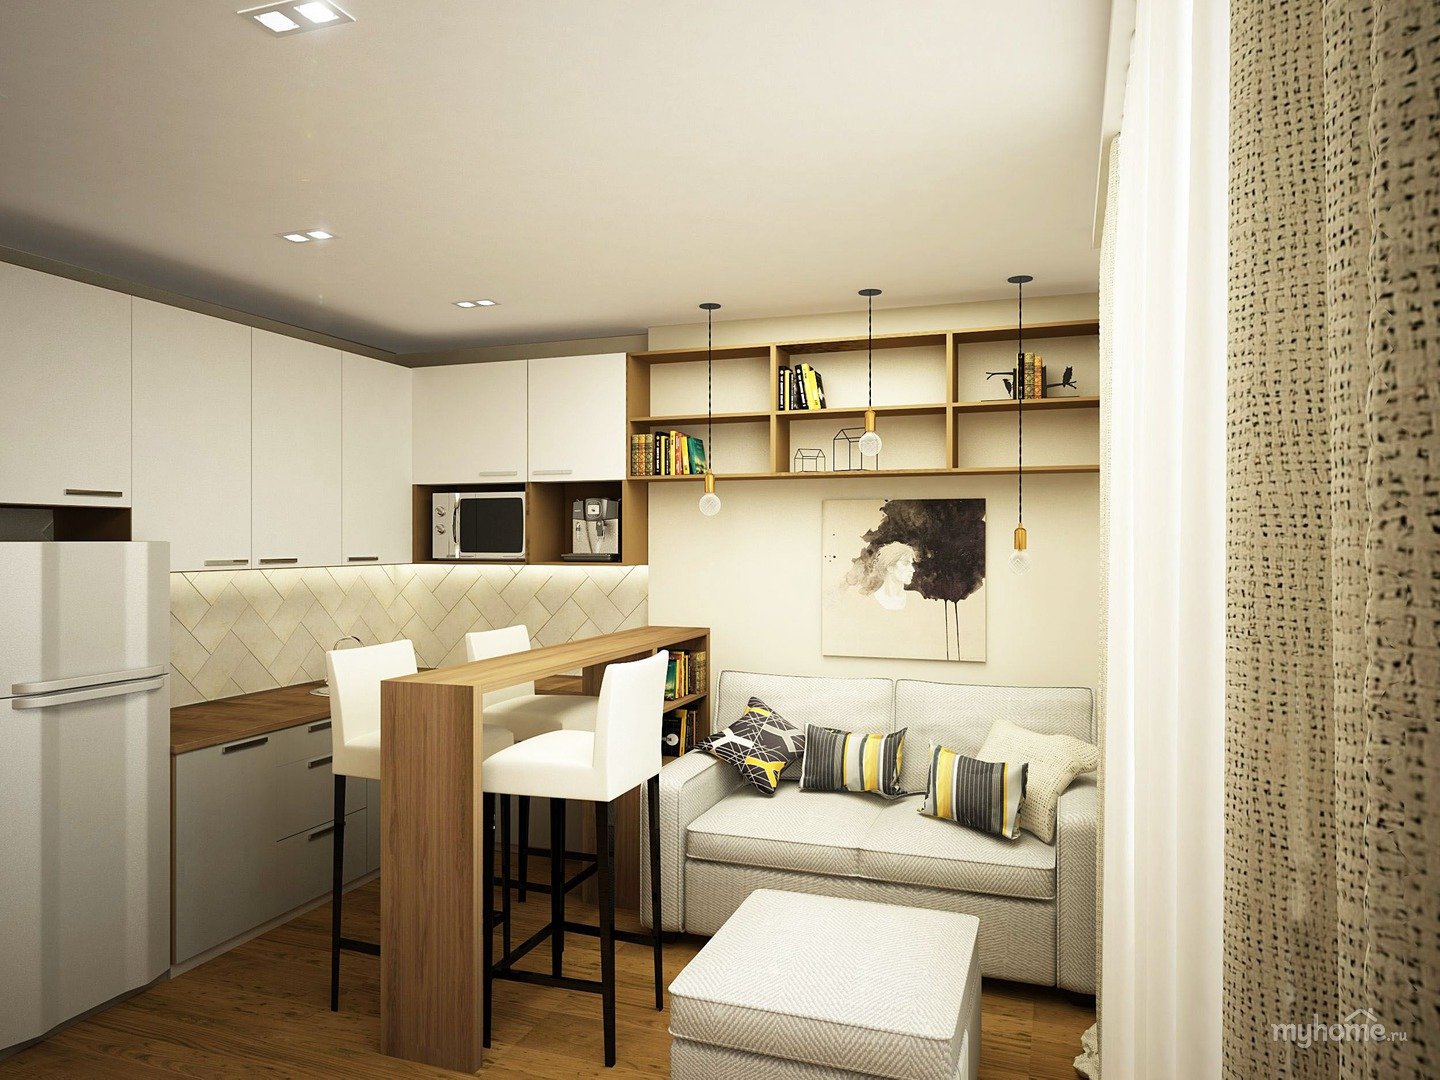 Спальное место на кухне 10 кв м дизайн